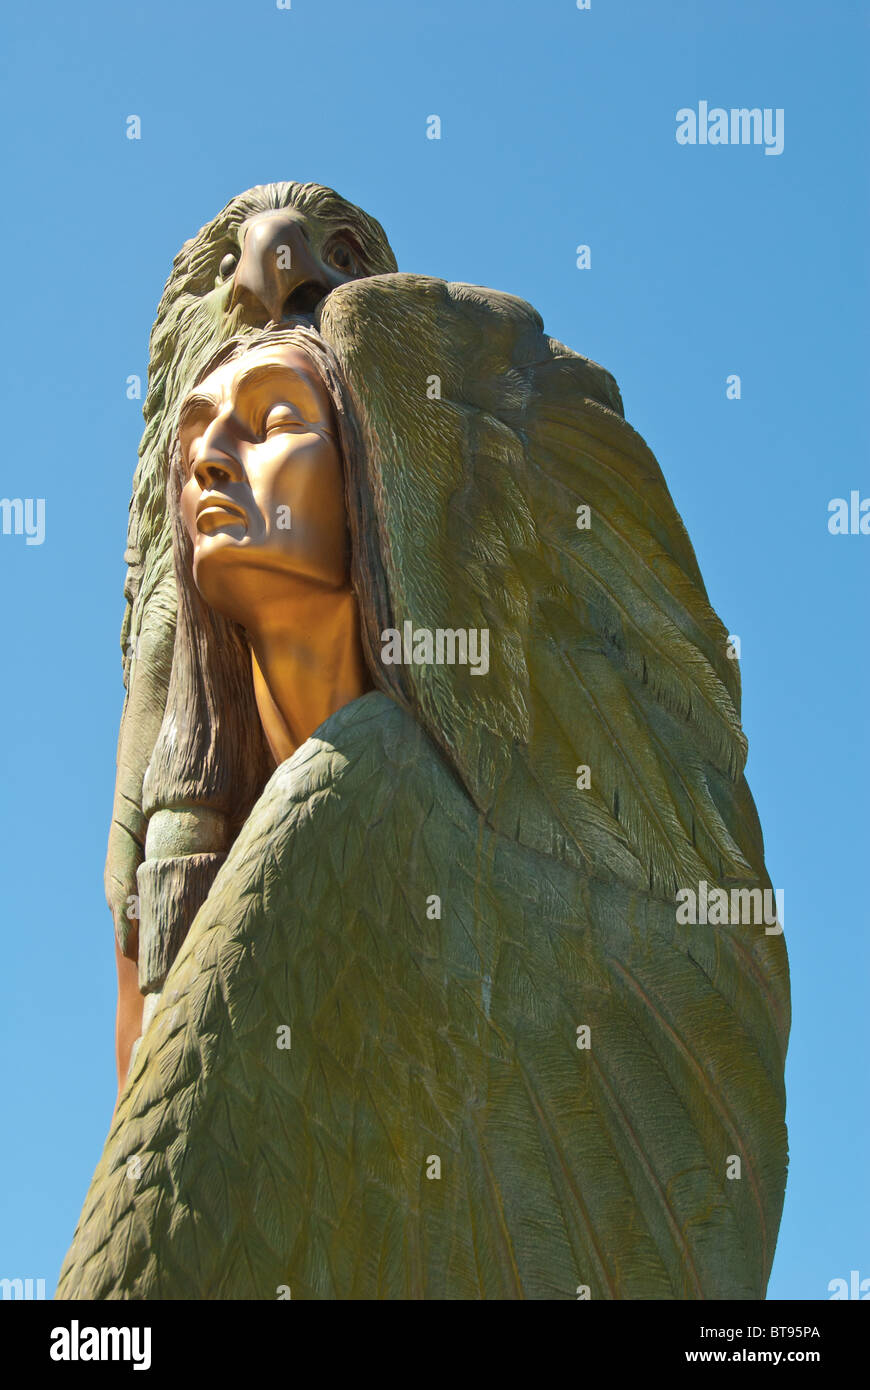 Viaggiare il monumento in bronzo da Francesco Jansen di un nativo americano e l'Aquila, cherokee, North Carolina, STATI UNITI D'AMERICA Foto Stock